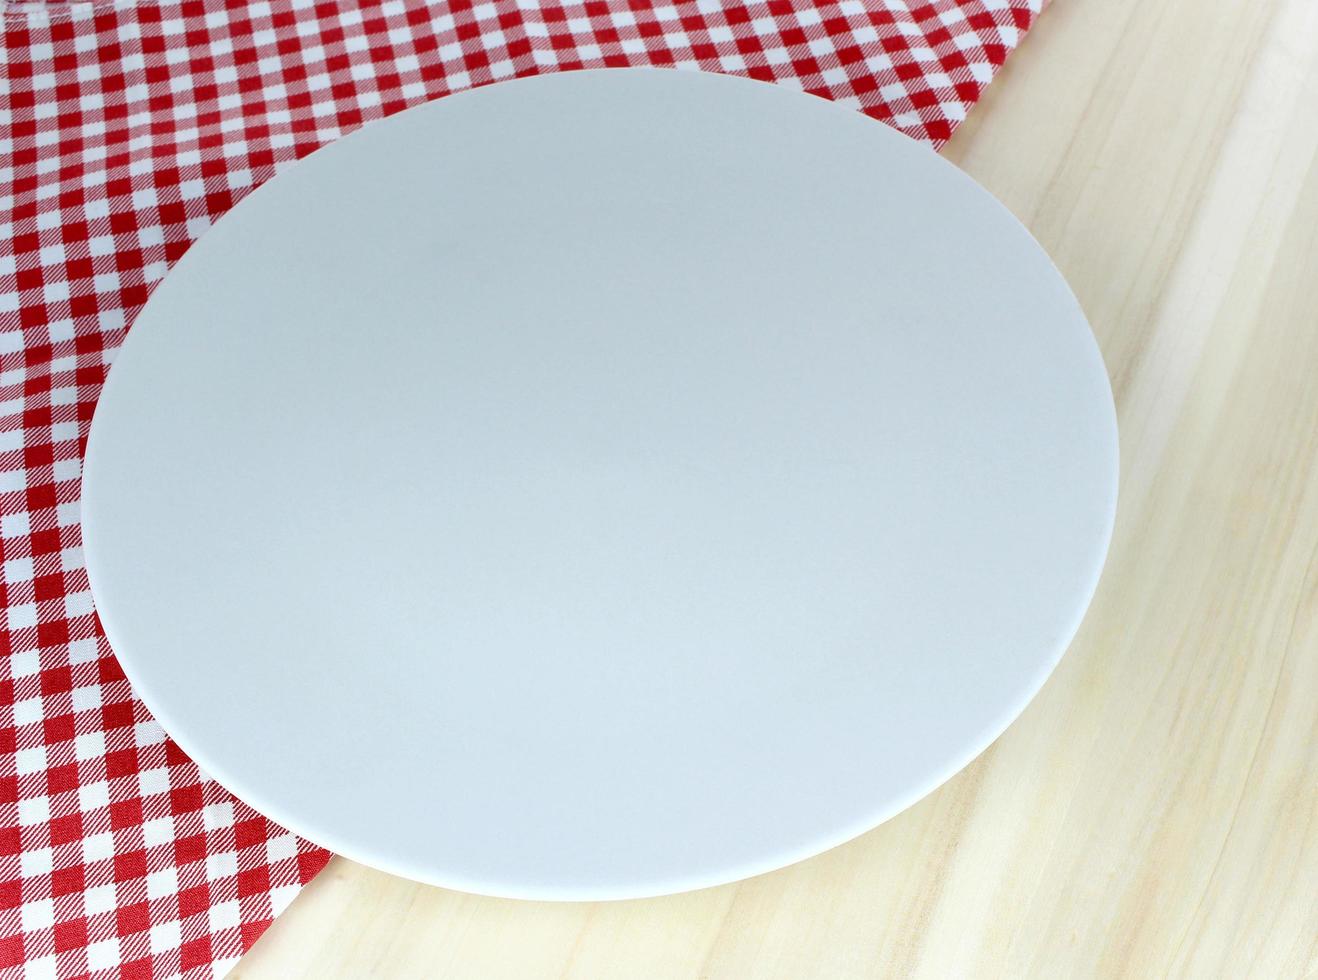 plato blanco en la mesa foto